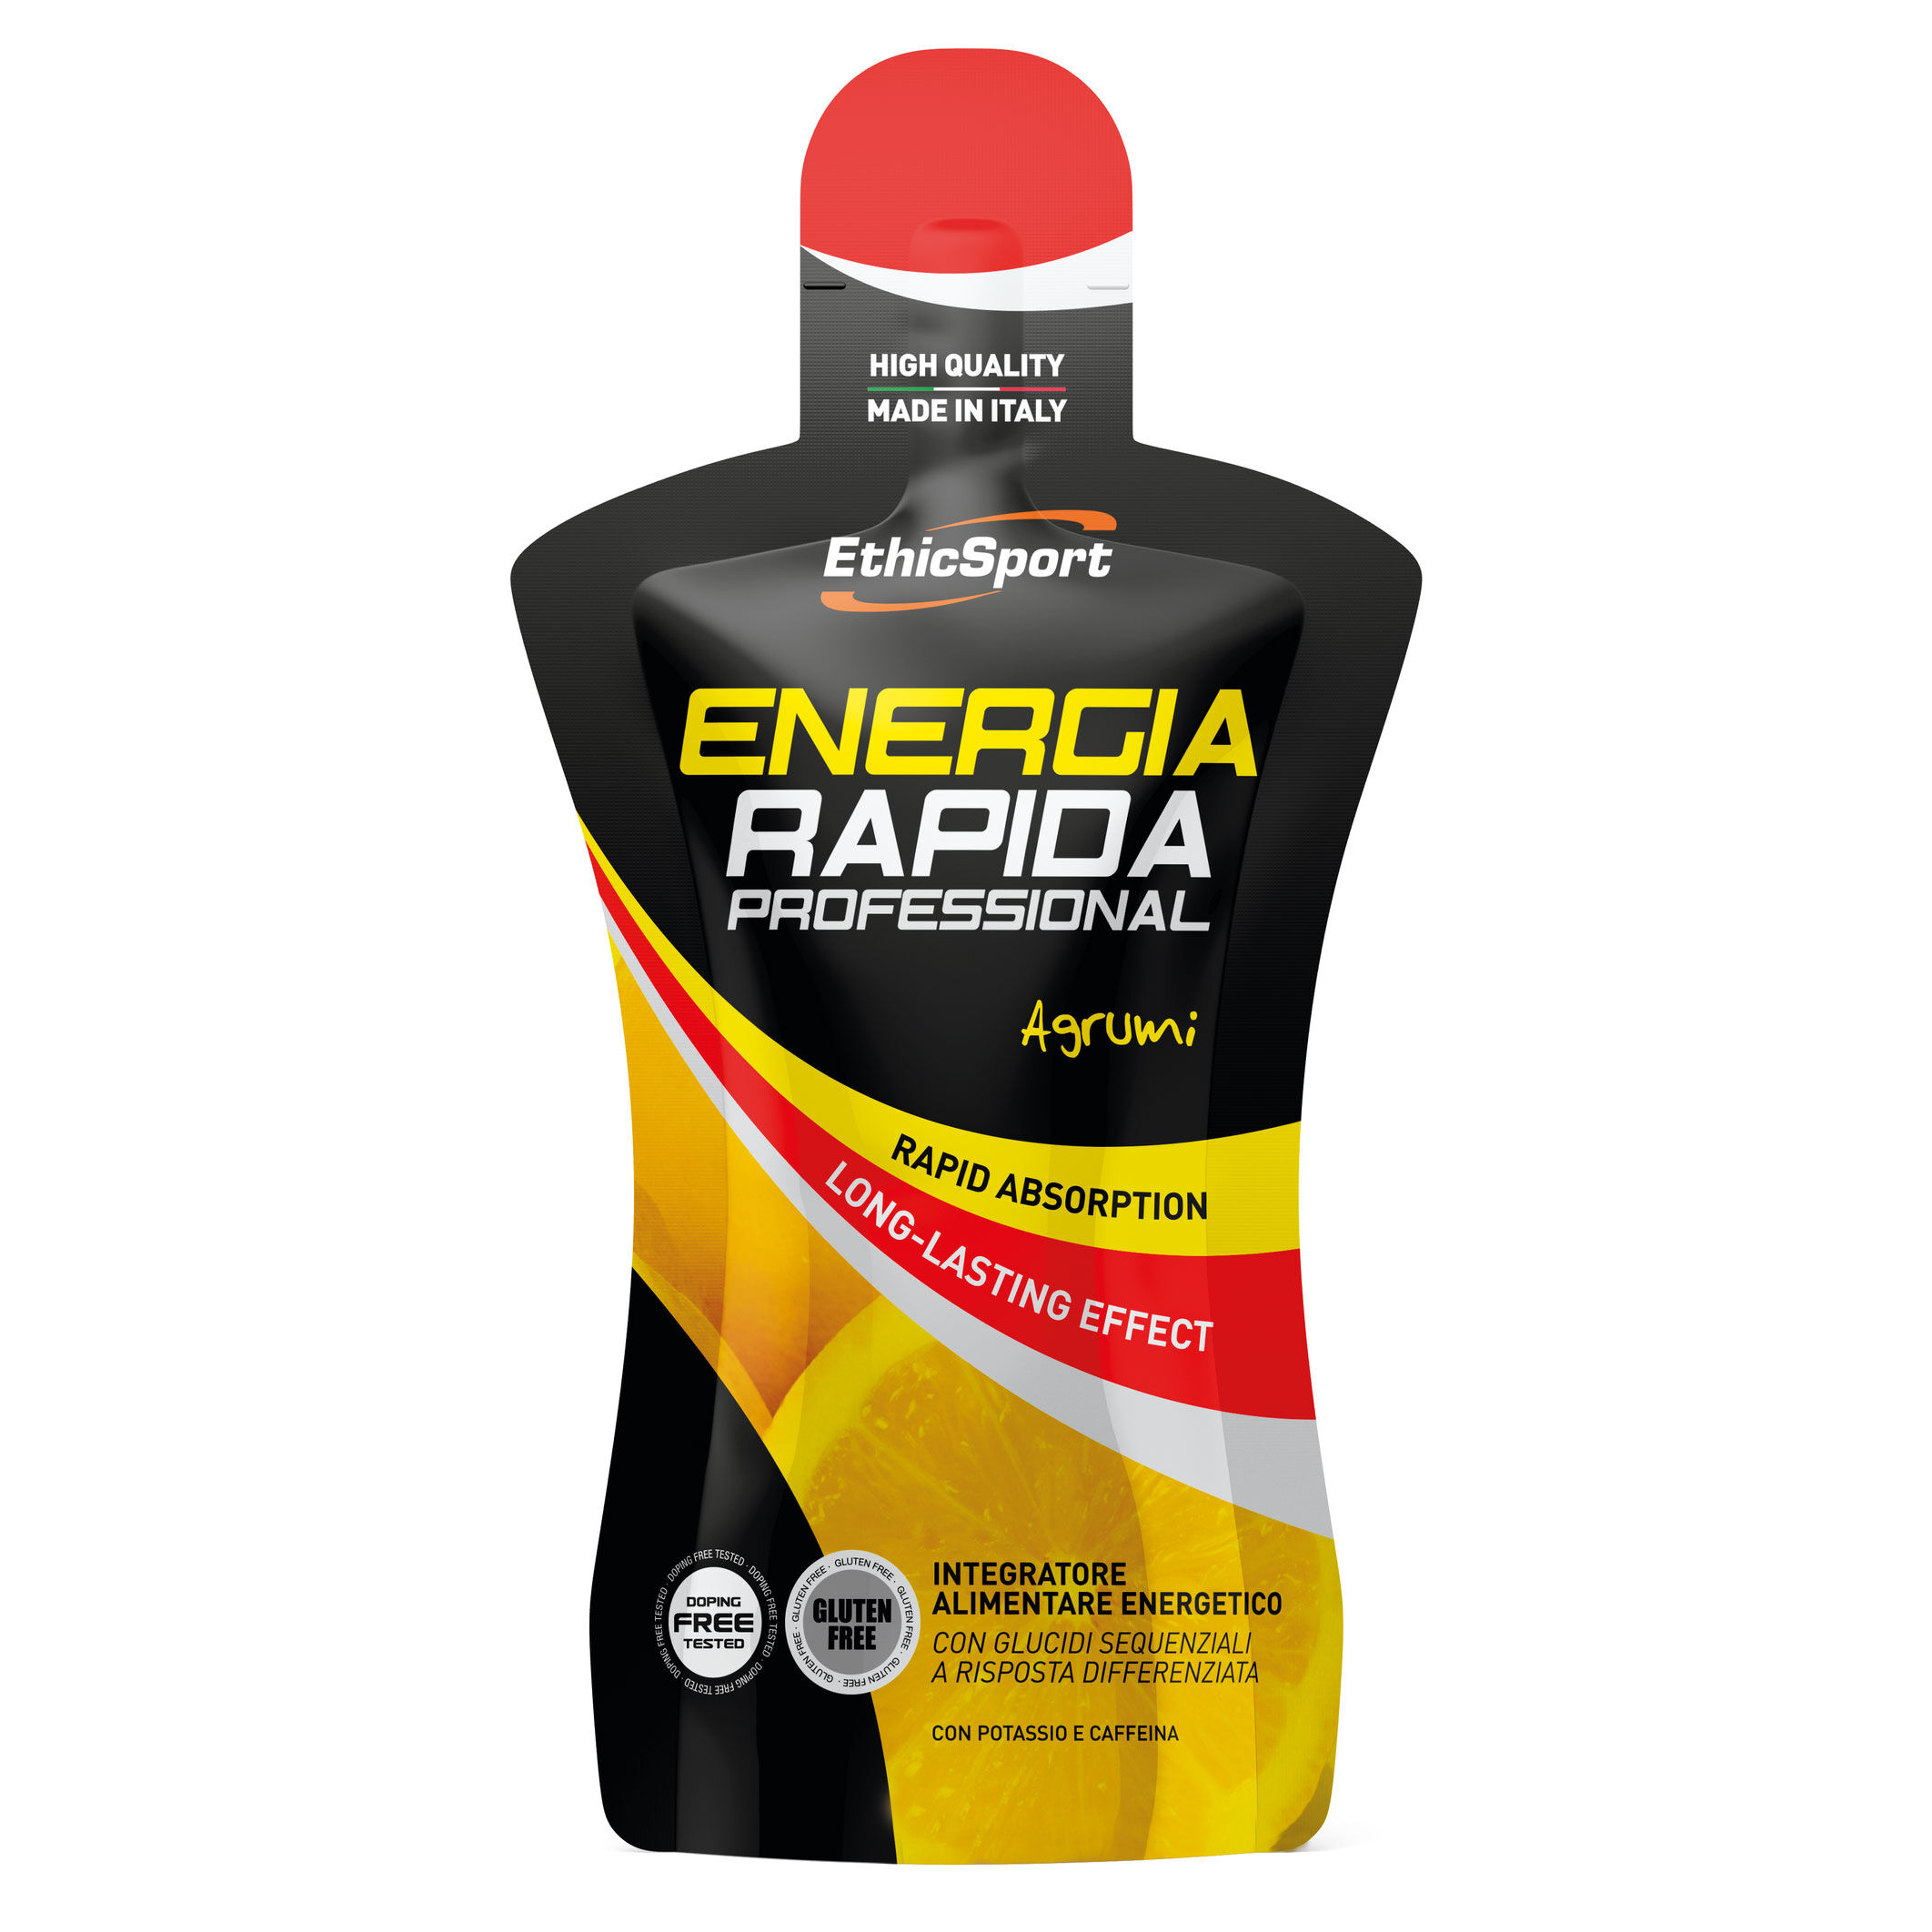 ENERGIA RAPIDA PROFESSIONAL Agrumi - Pack 50 ml.  